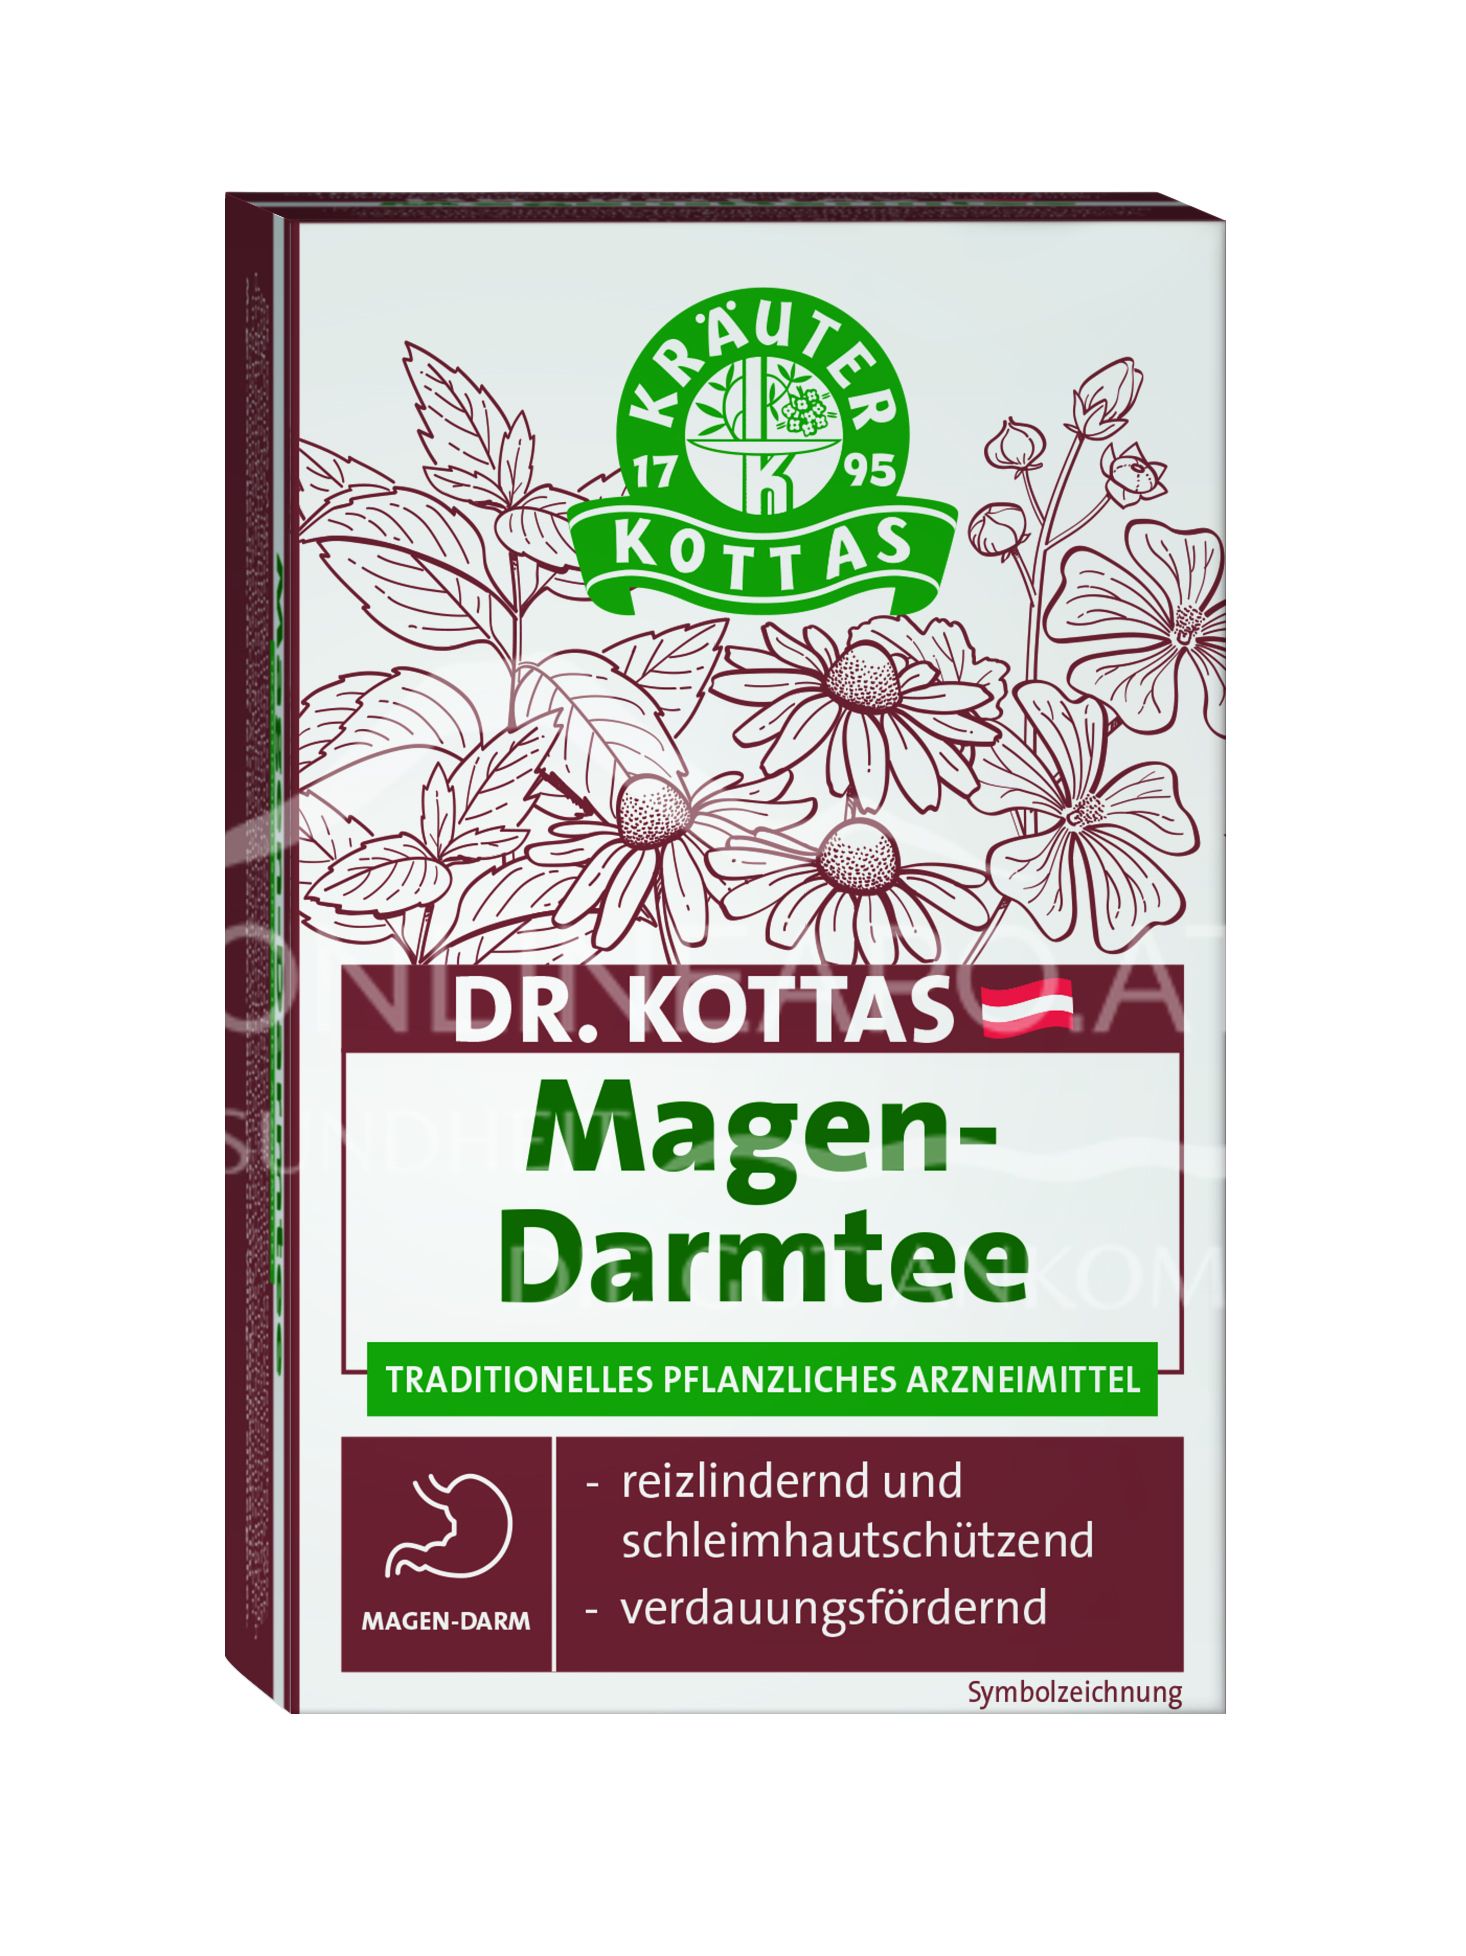 Dr. Kottas Magen-Darmtee